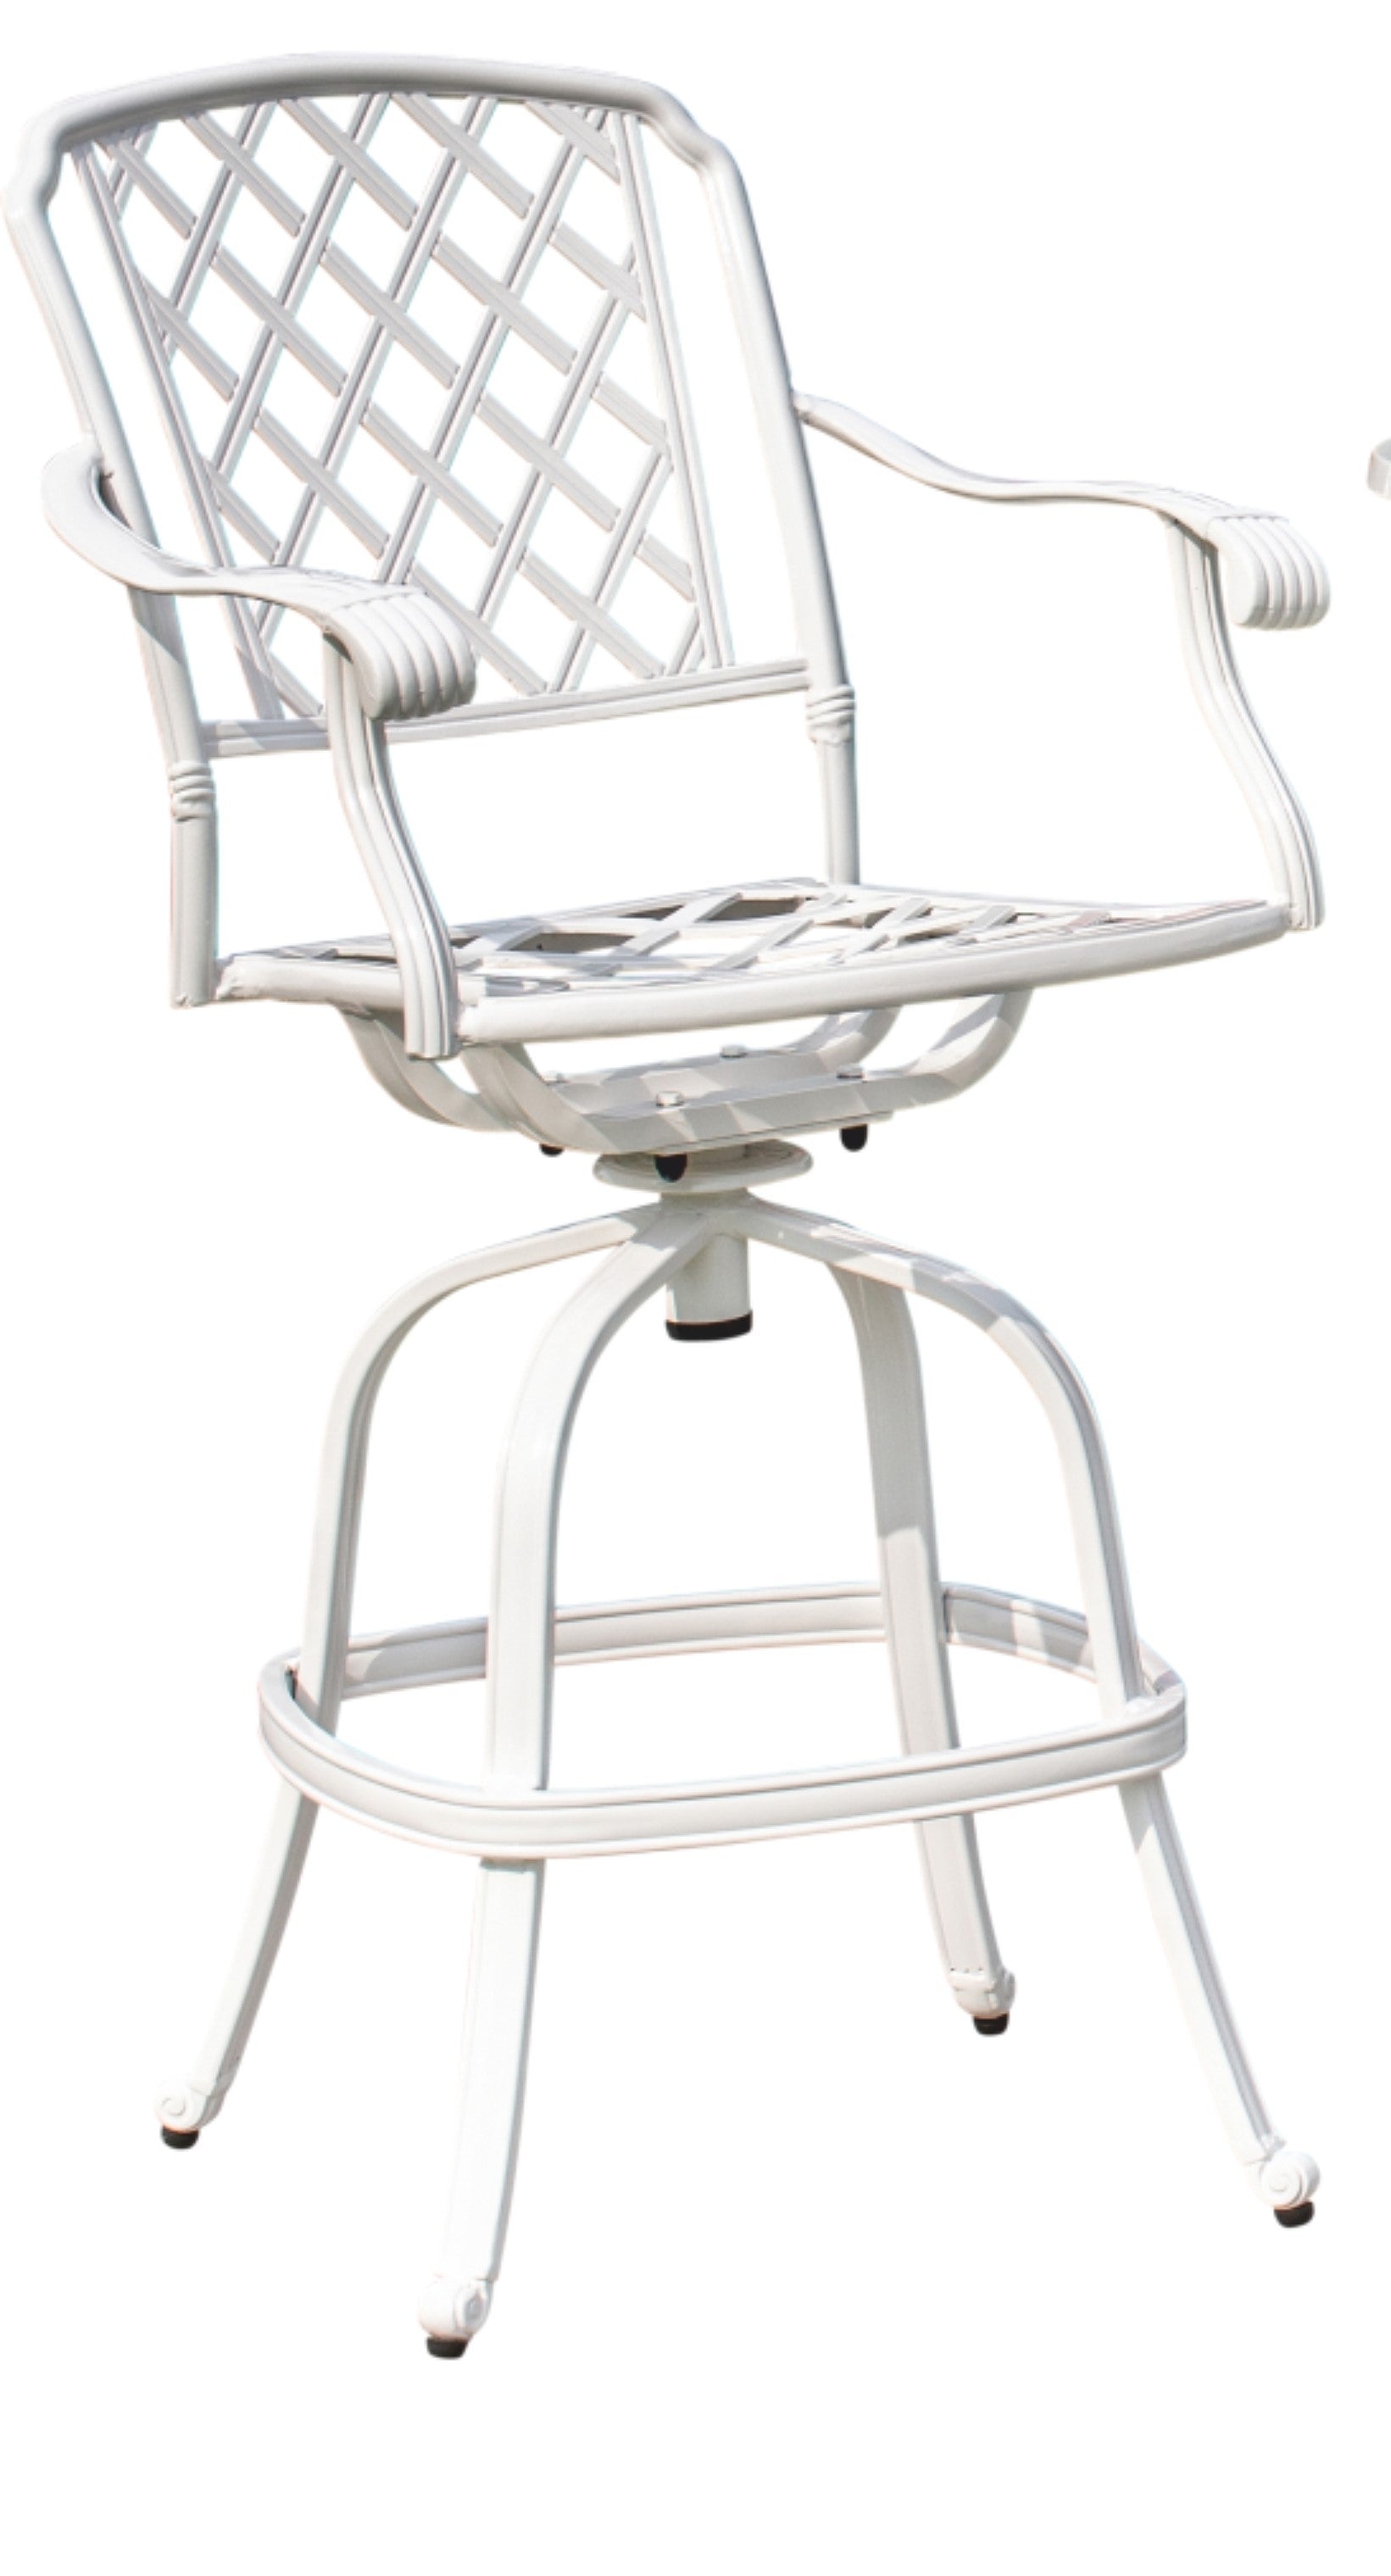 Nostalgischer Barsessel aus weißem Aluminiumguss; mit vier geschwungenen Beinen und Fußstützen; drehbarer Sitz mit ebenfalls geschwungenen Armlehnen, gitterartige Sitz und Rückenfläche.